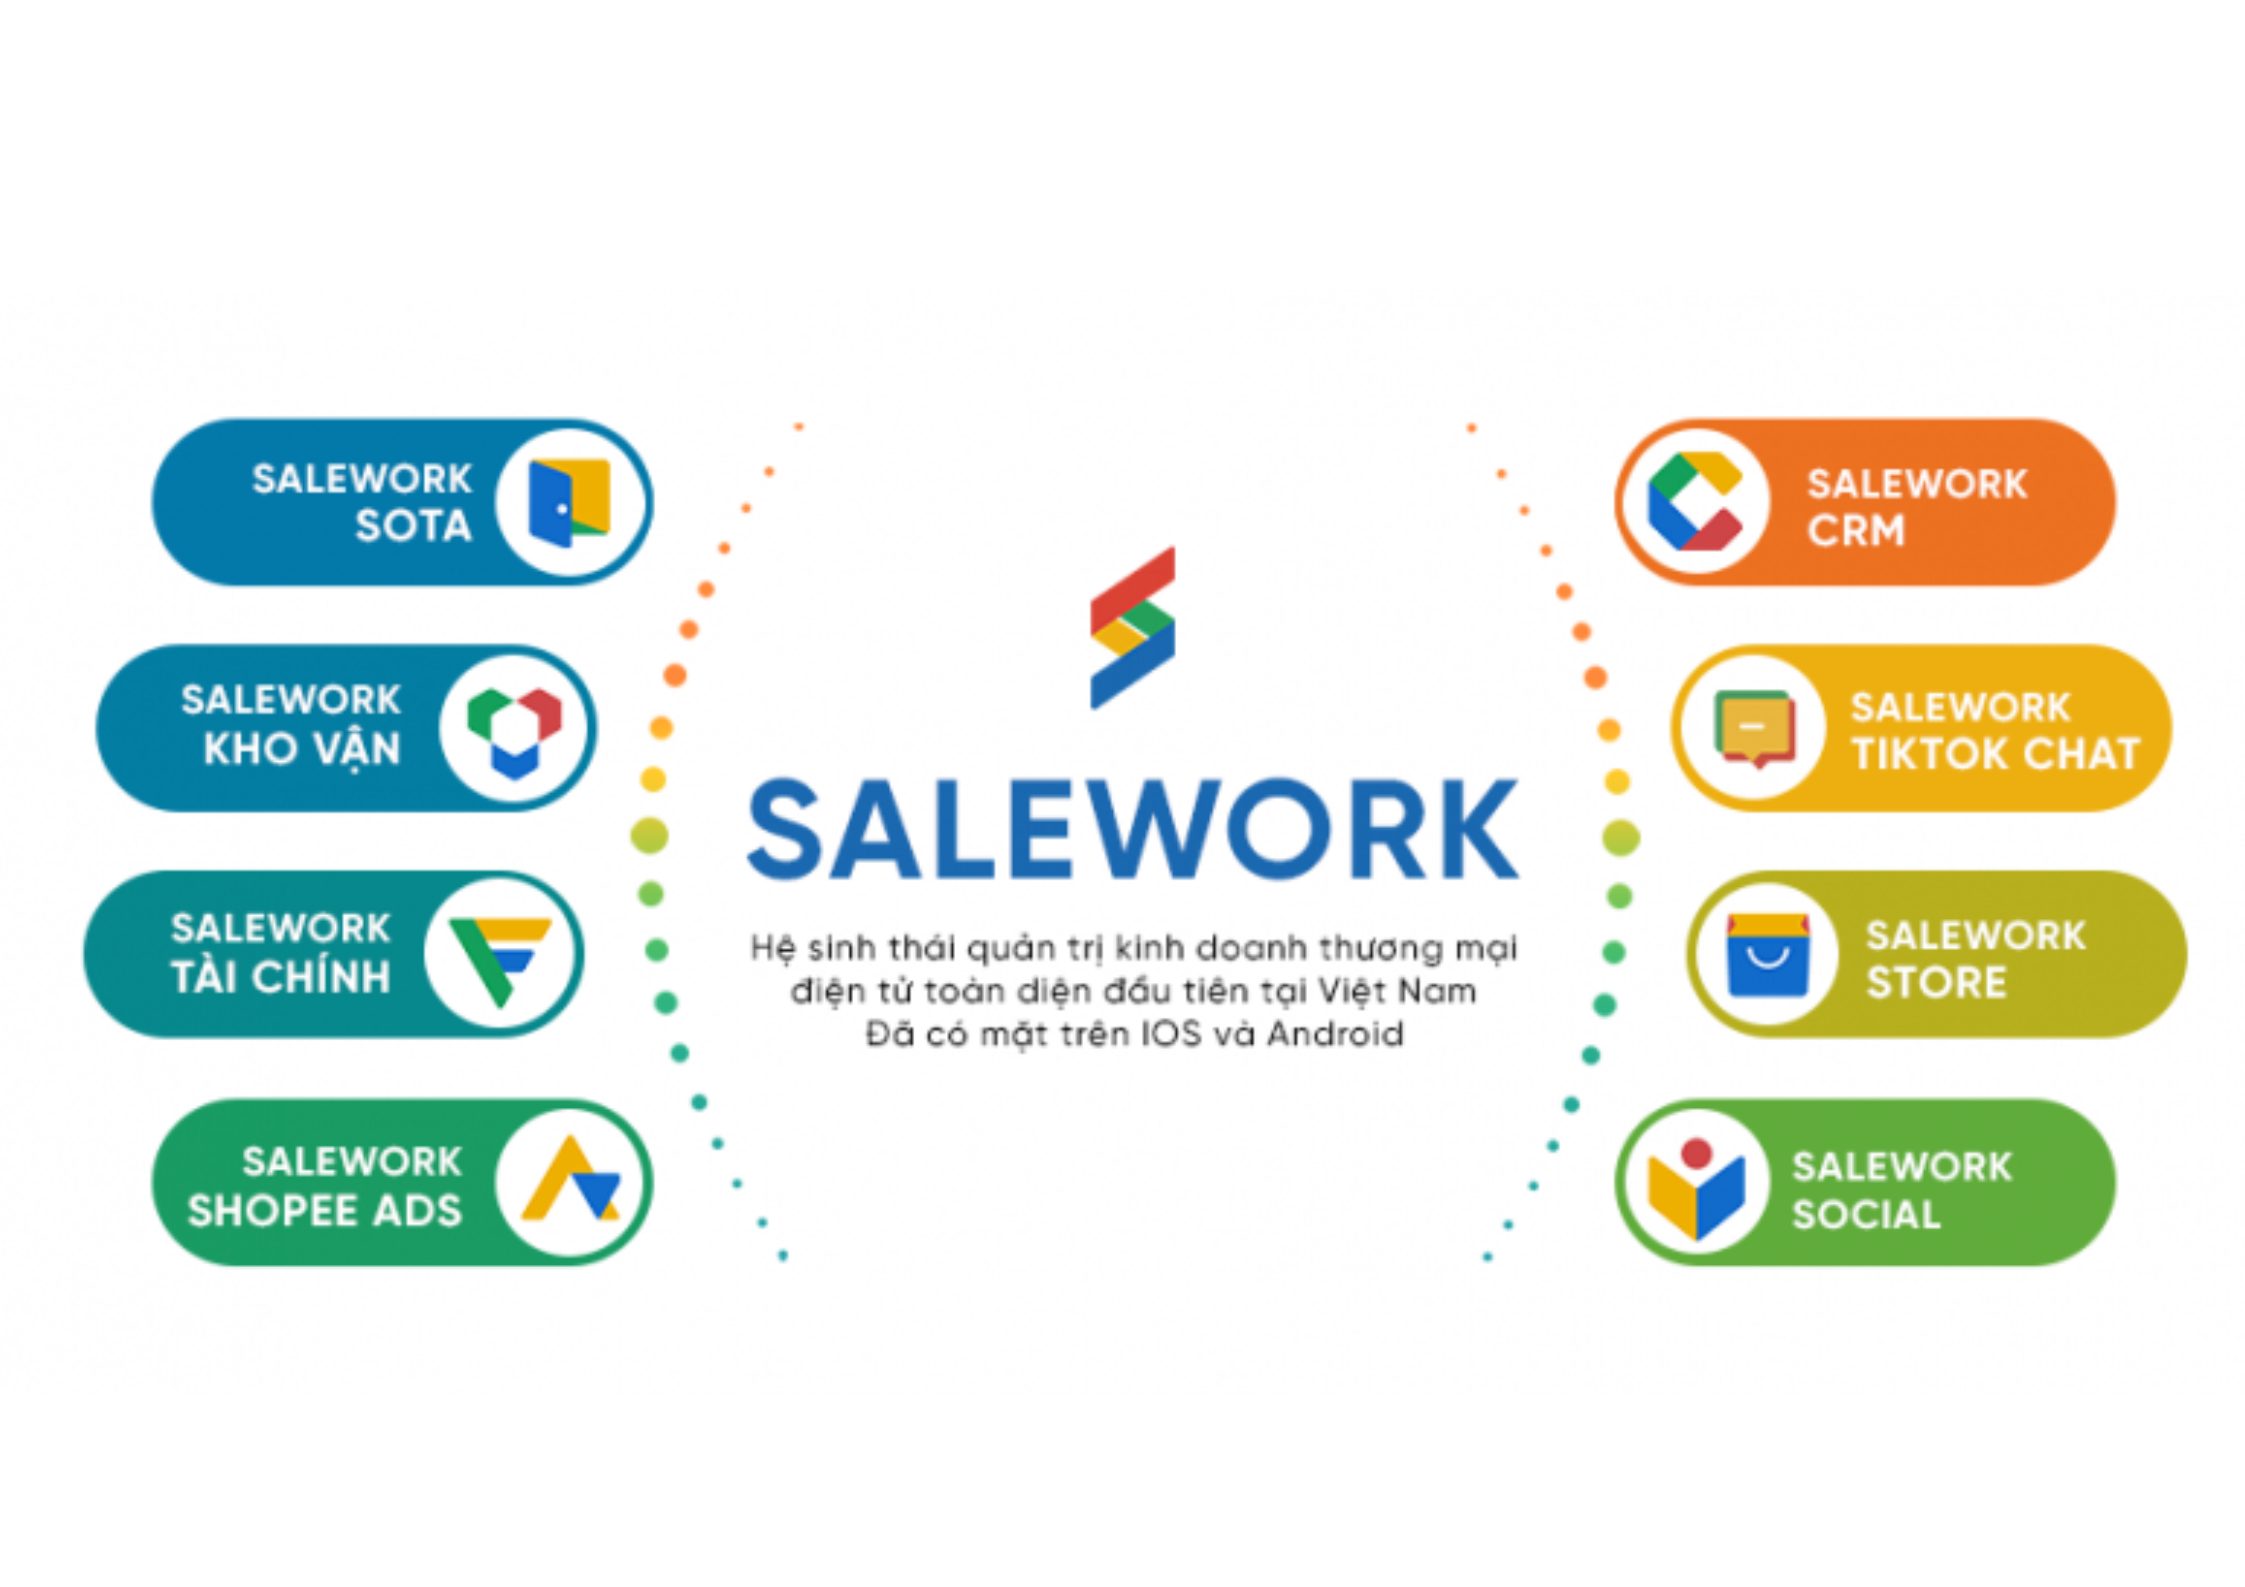 [Baodansinh.vn] Tối ưu hiệu quả kinh doanh với phần mềm quản lý bán hàng online Salework - 23